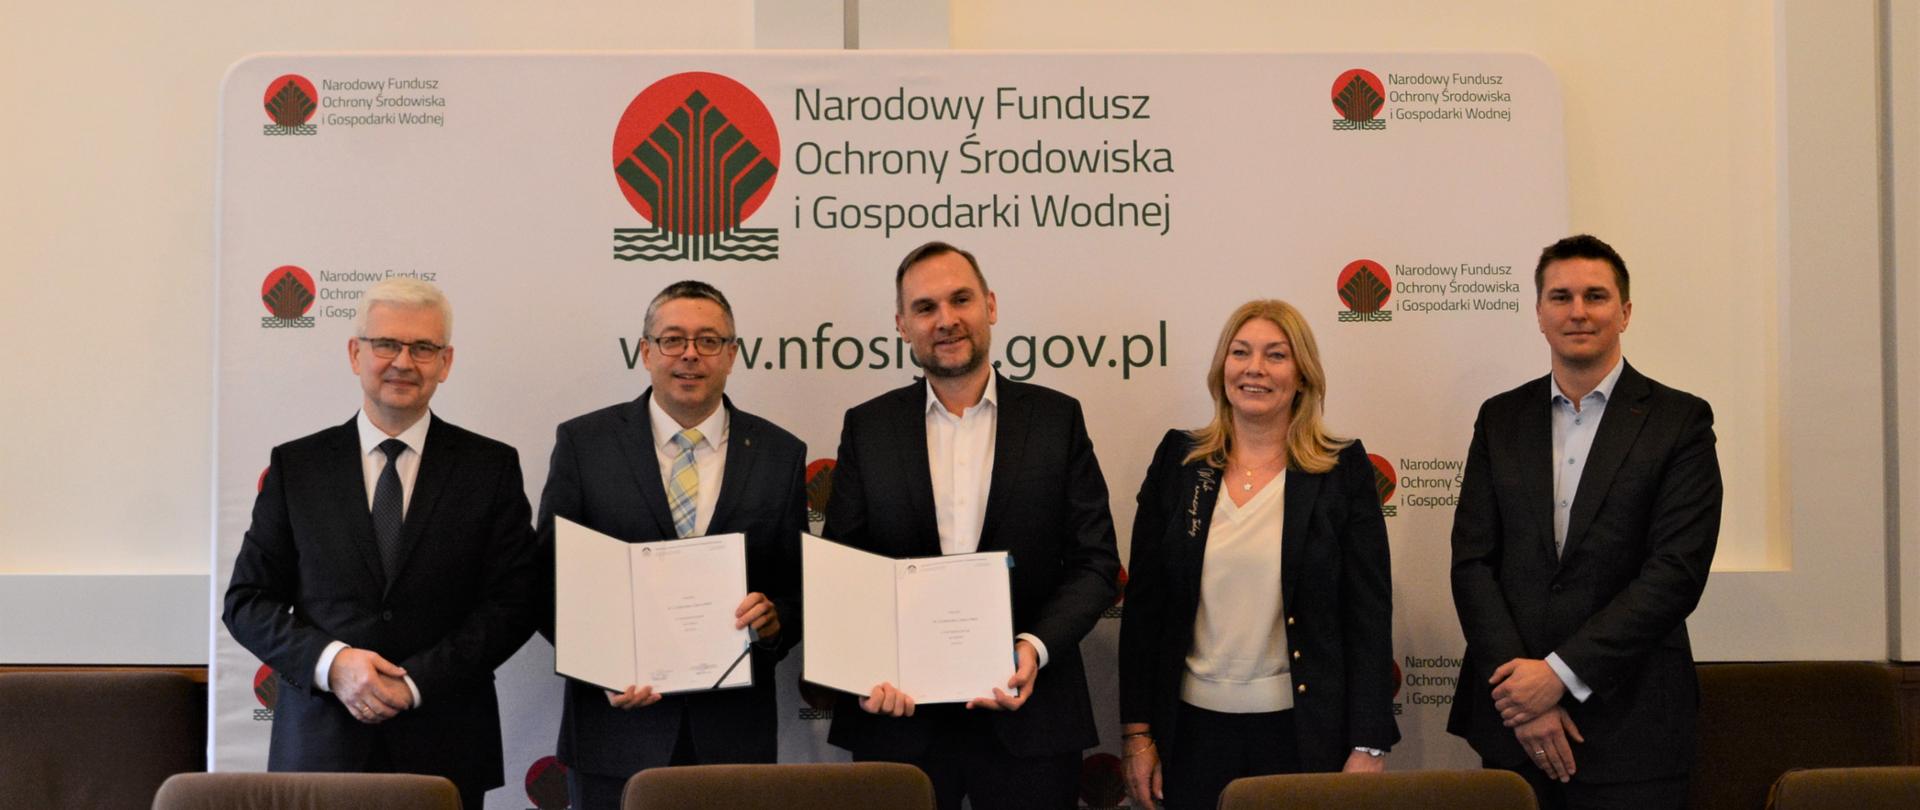 Uroczystość podpisania umowy o dofinansowanie przez NFOŚiGW projektu PAK-PCE Stacje H2 Sp. z o.o. pn. Budowa 5 ogólnodostępnych stacji tankowania wodorem zlokalizowanych we Wrocławiu, Rybniku, Lublinie, Gdańsku i Gdyni.